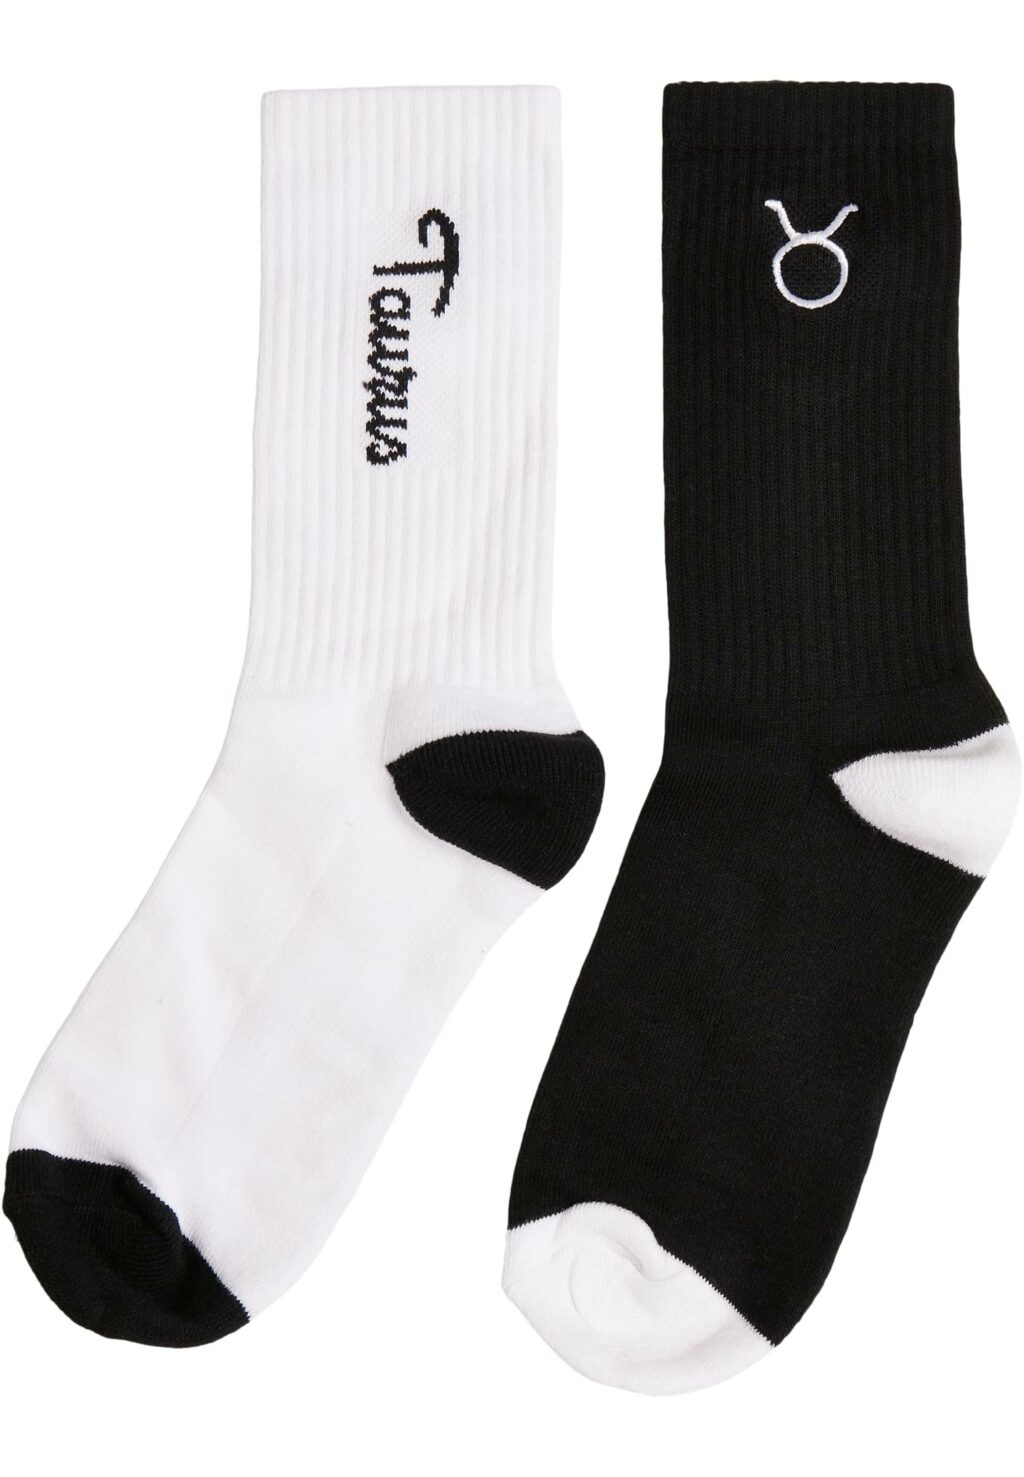 Zodiac Socks 2-Pack black/white taurus MT2235